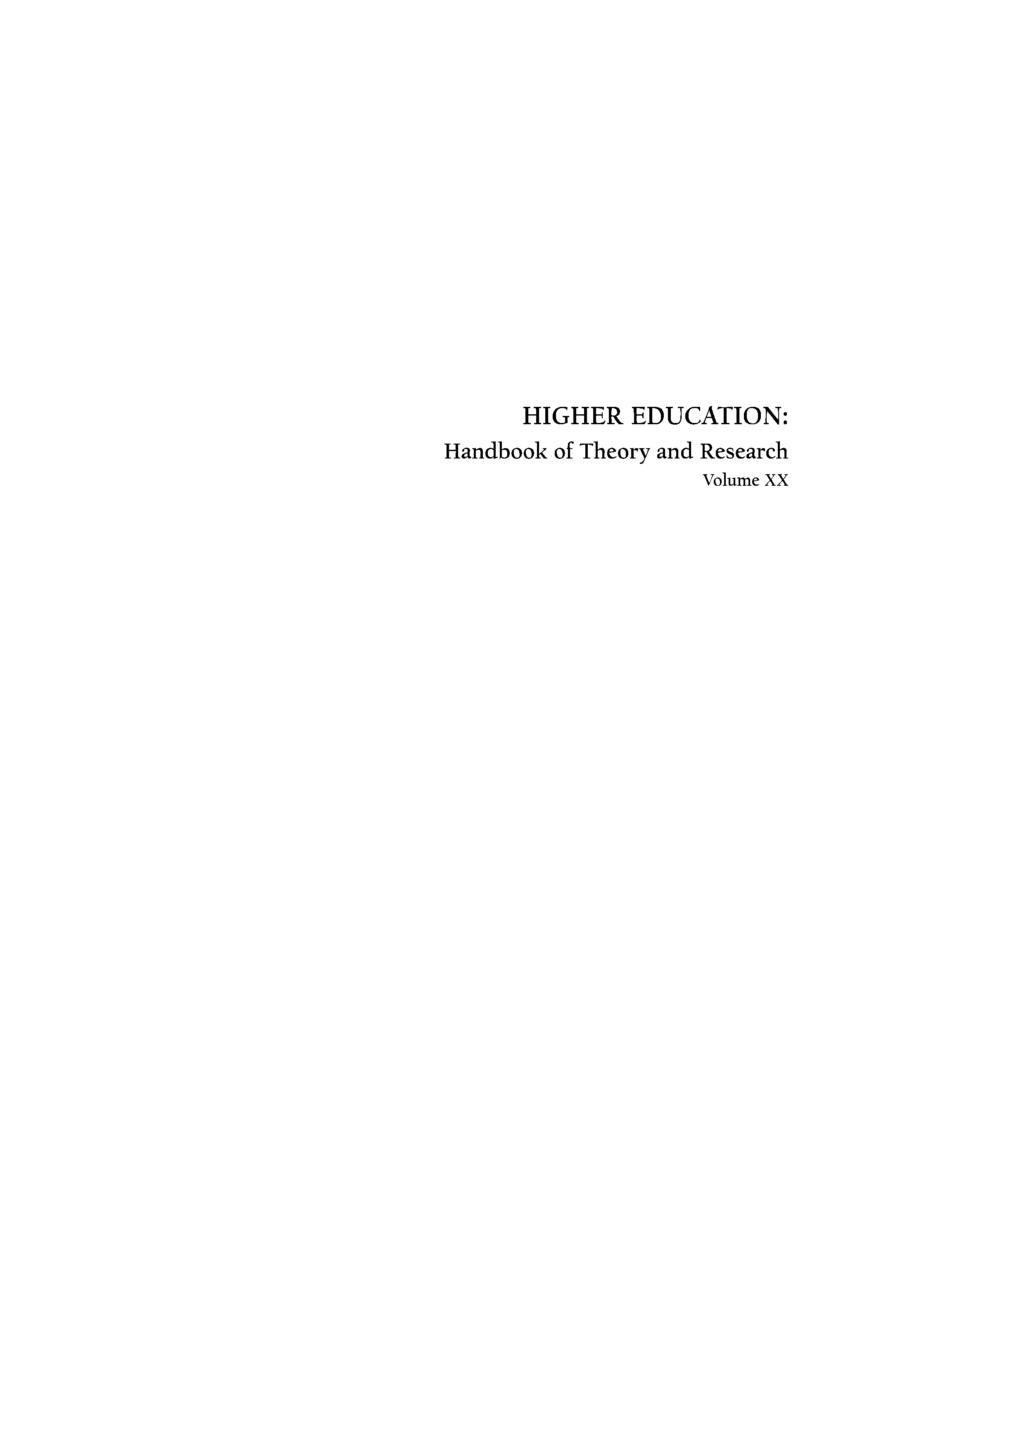 HIGHER EDUCATION: Handbook of